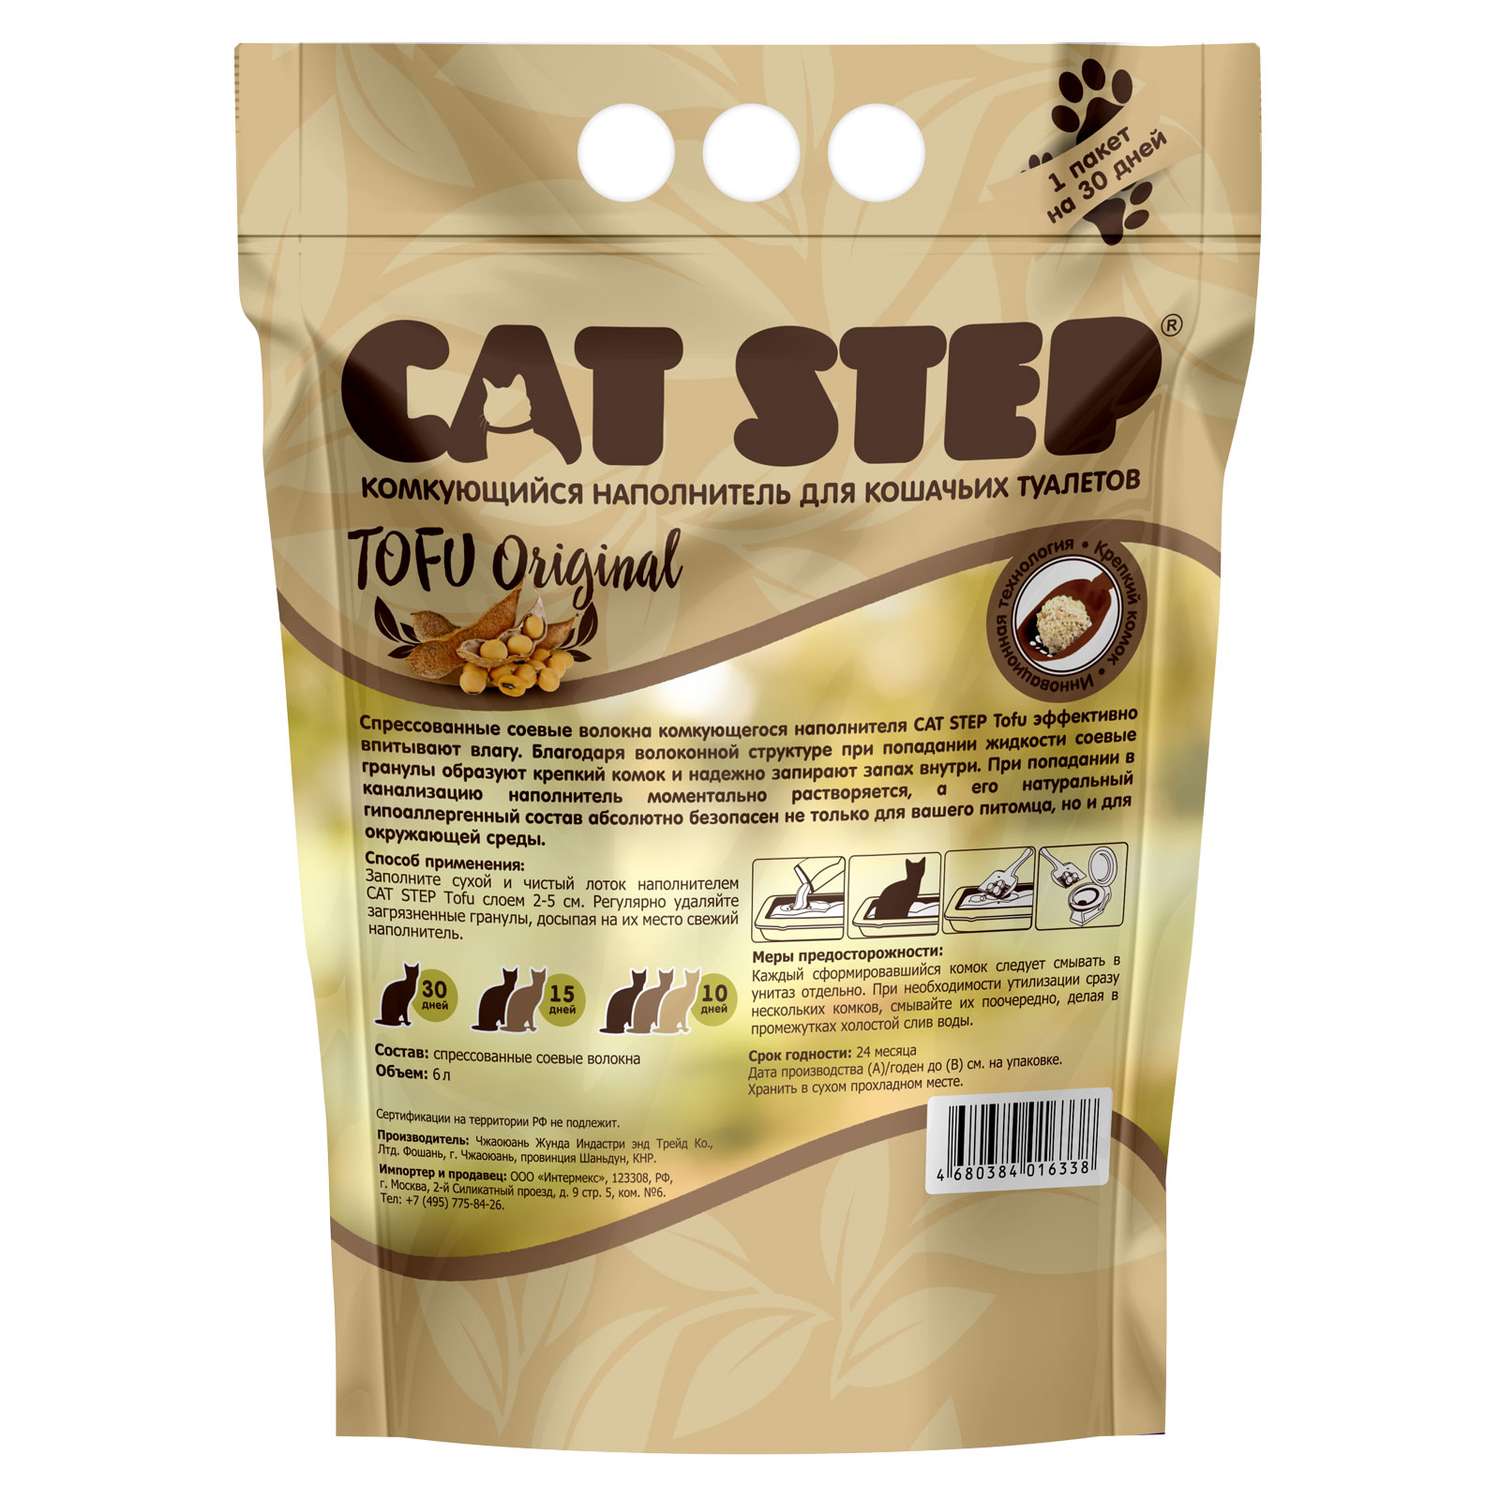 Наполнитель для кошек Cat Step Tofu Original растительный комкующийся 6л - фото 2